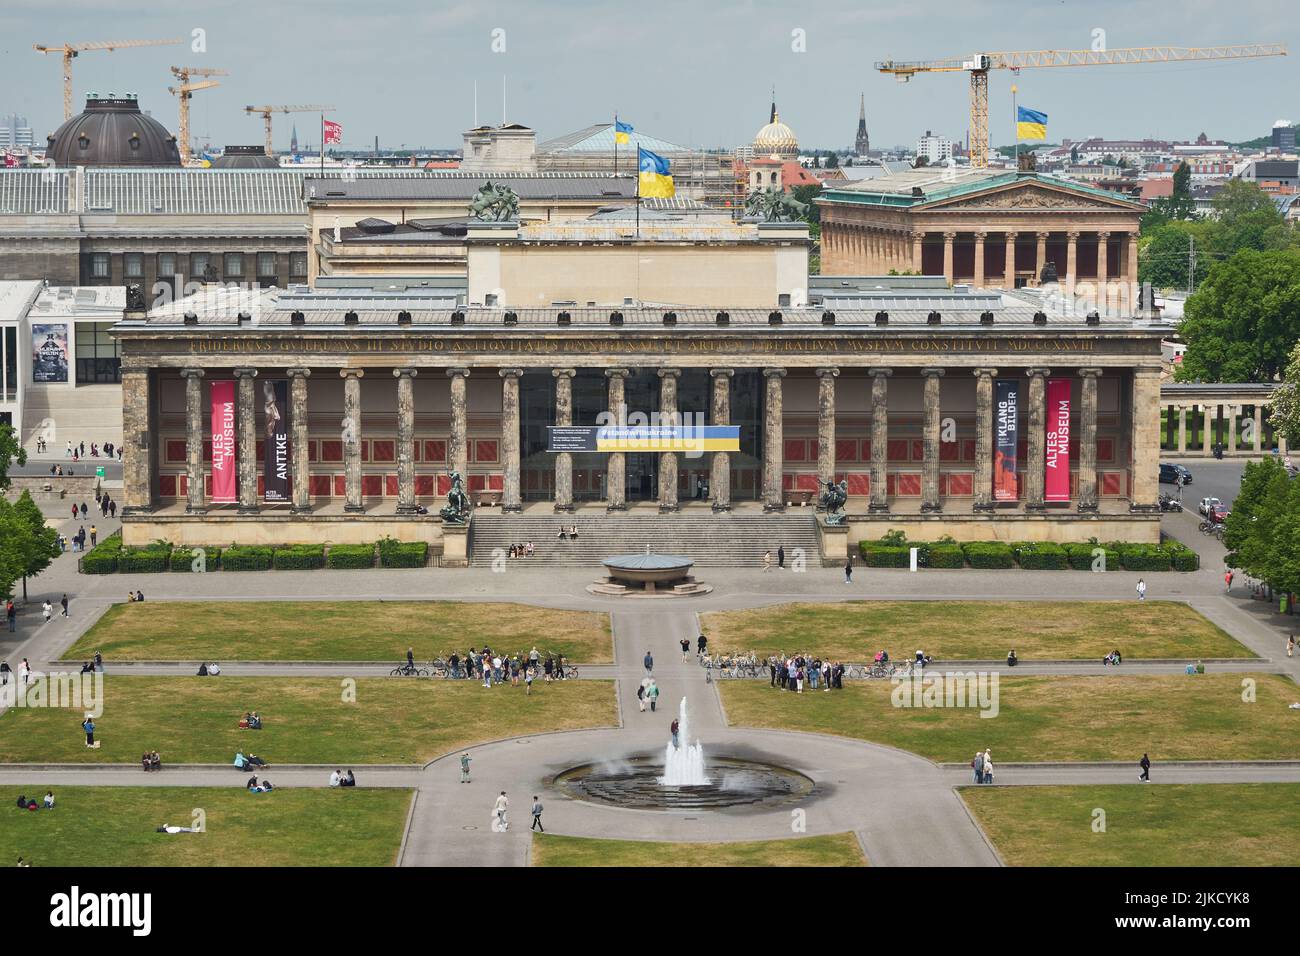 Das Alte Museum, von Karl Friedrich Schinkel erbaut, vorne der Lustgarten, auf dem Dach die Flagge der Ukraine, Museumsinsel, Unter den Linden, Berlín Foto de stock